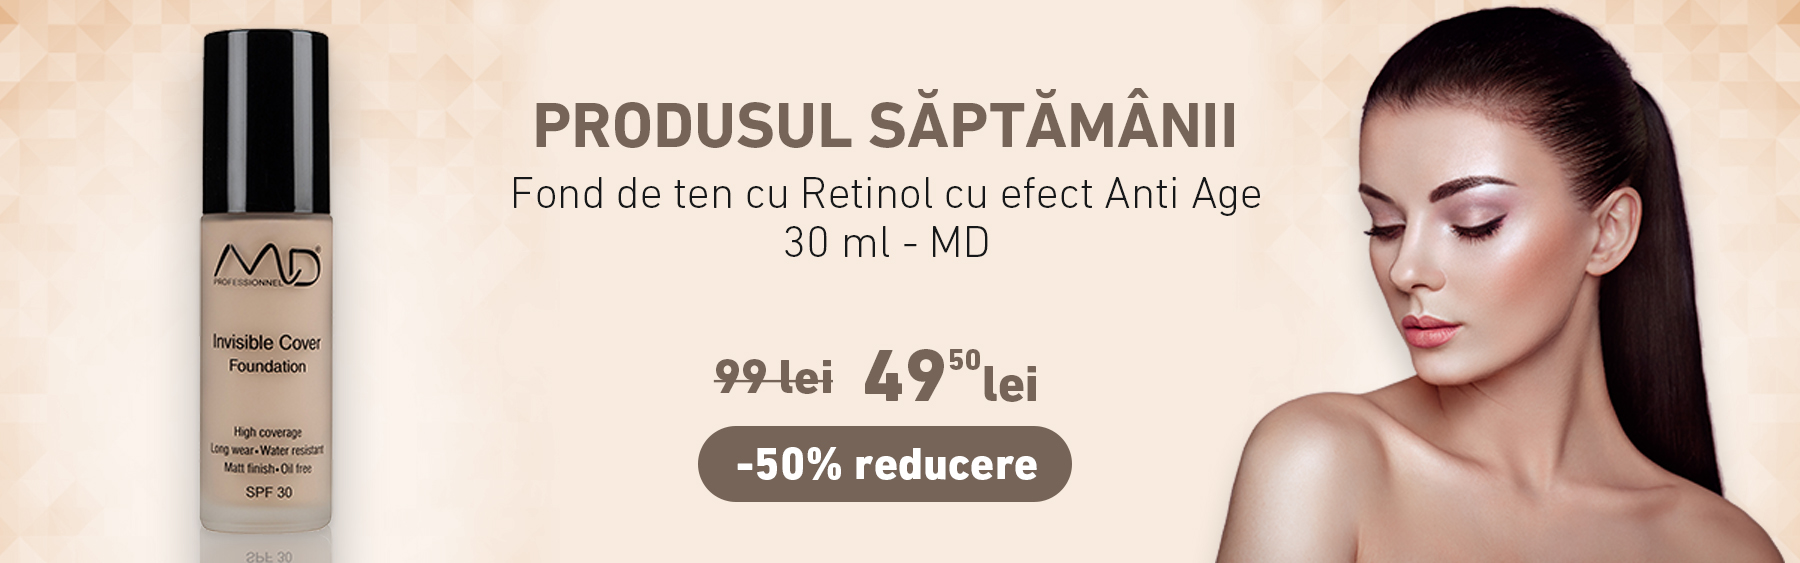 Fond de ten cu Retinol cu efect Anti Age - 30 ml - MD cu -50% reducere